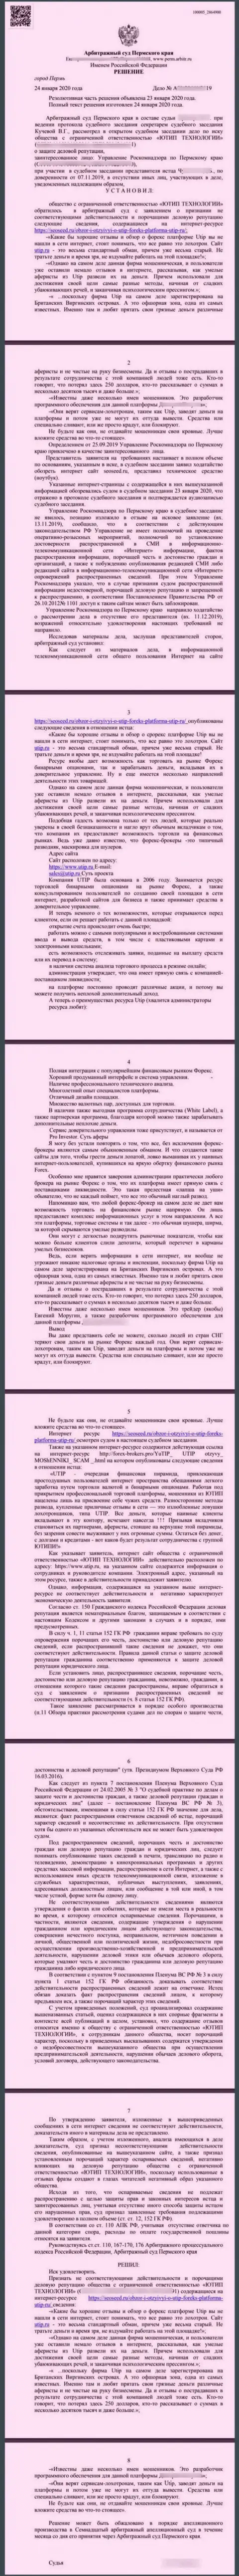 Иск мошенников UTIP Ru, который был удовлетворен самым гуманным в мире судом